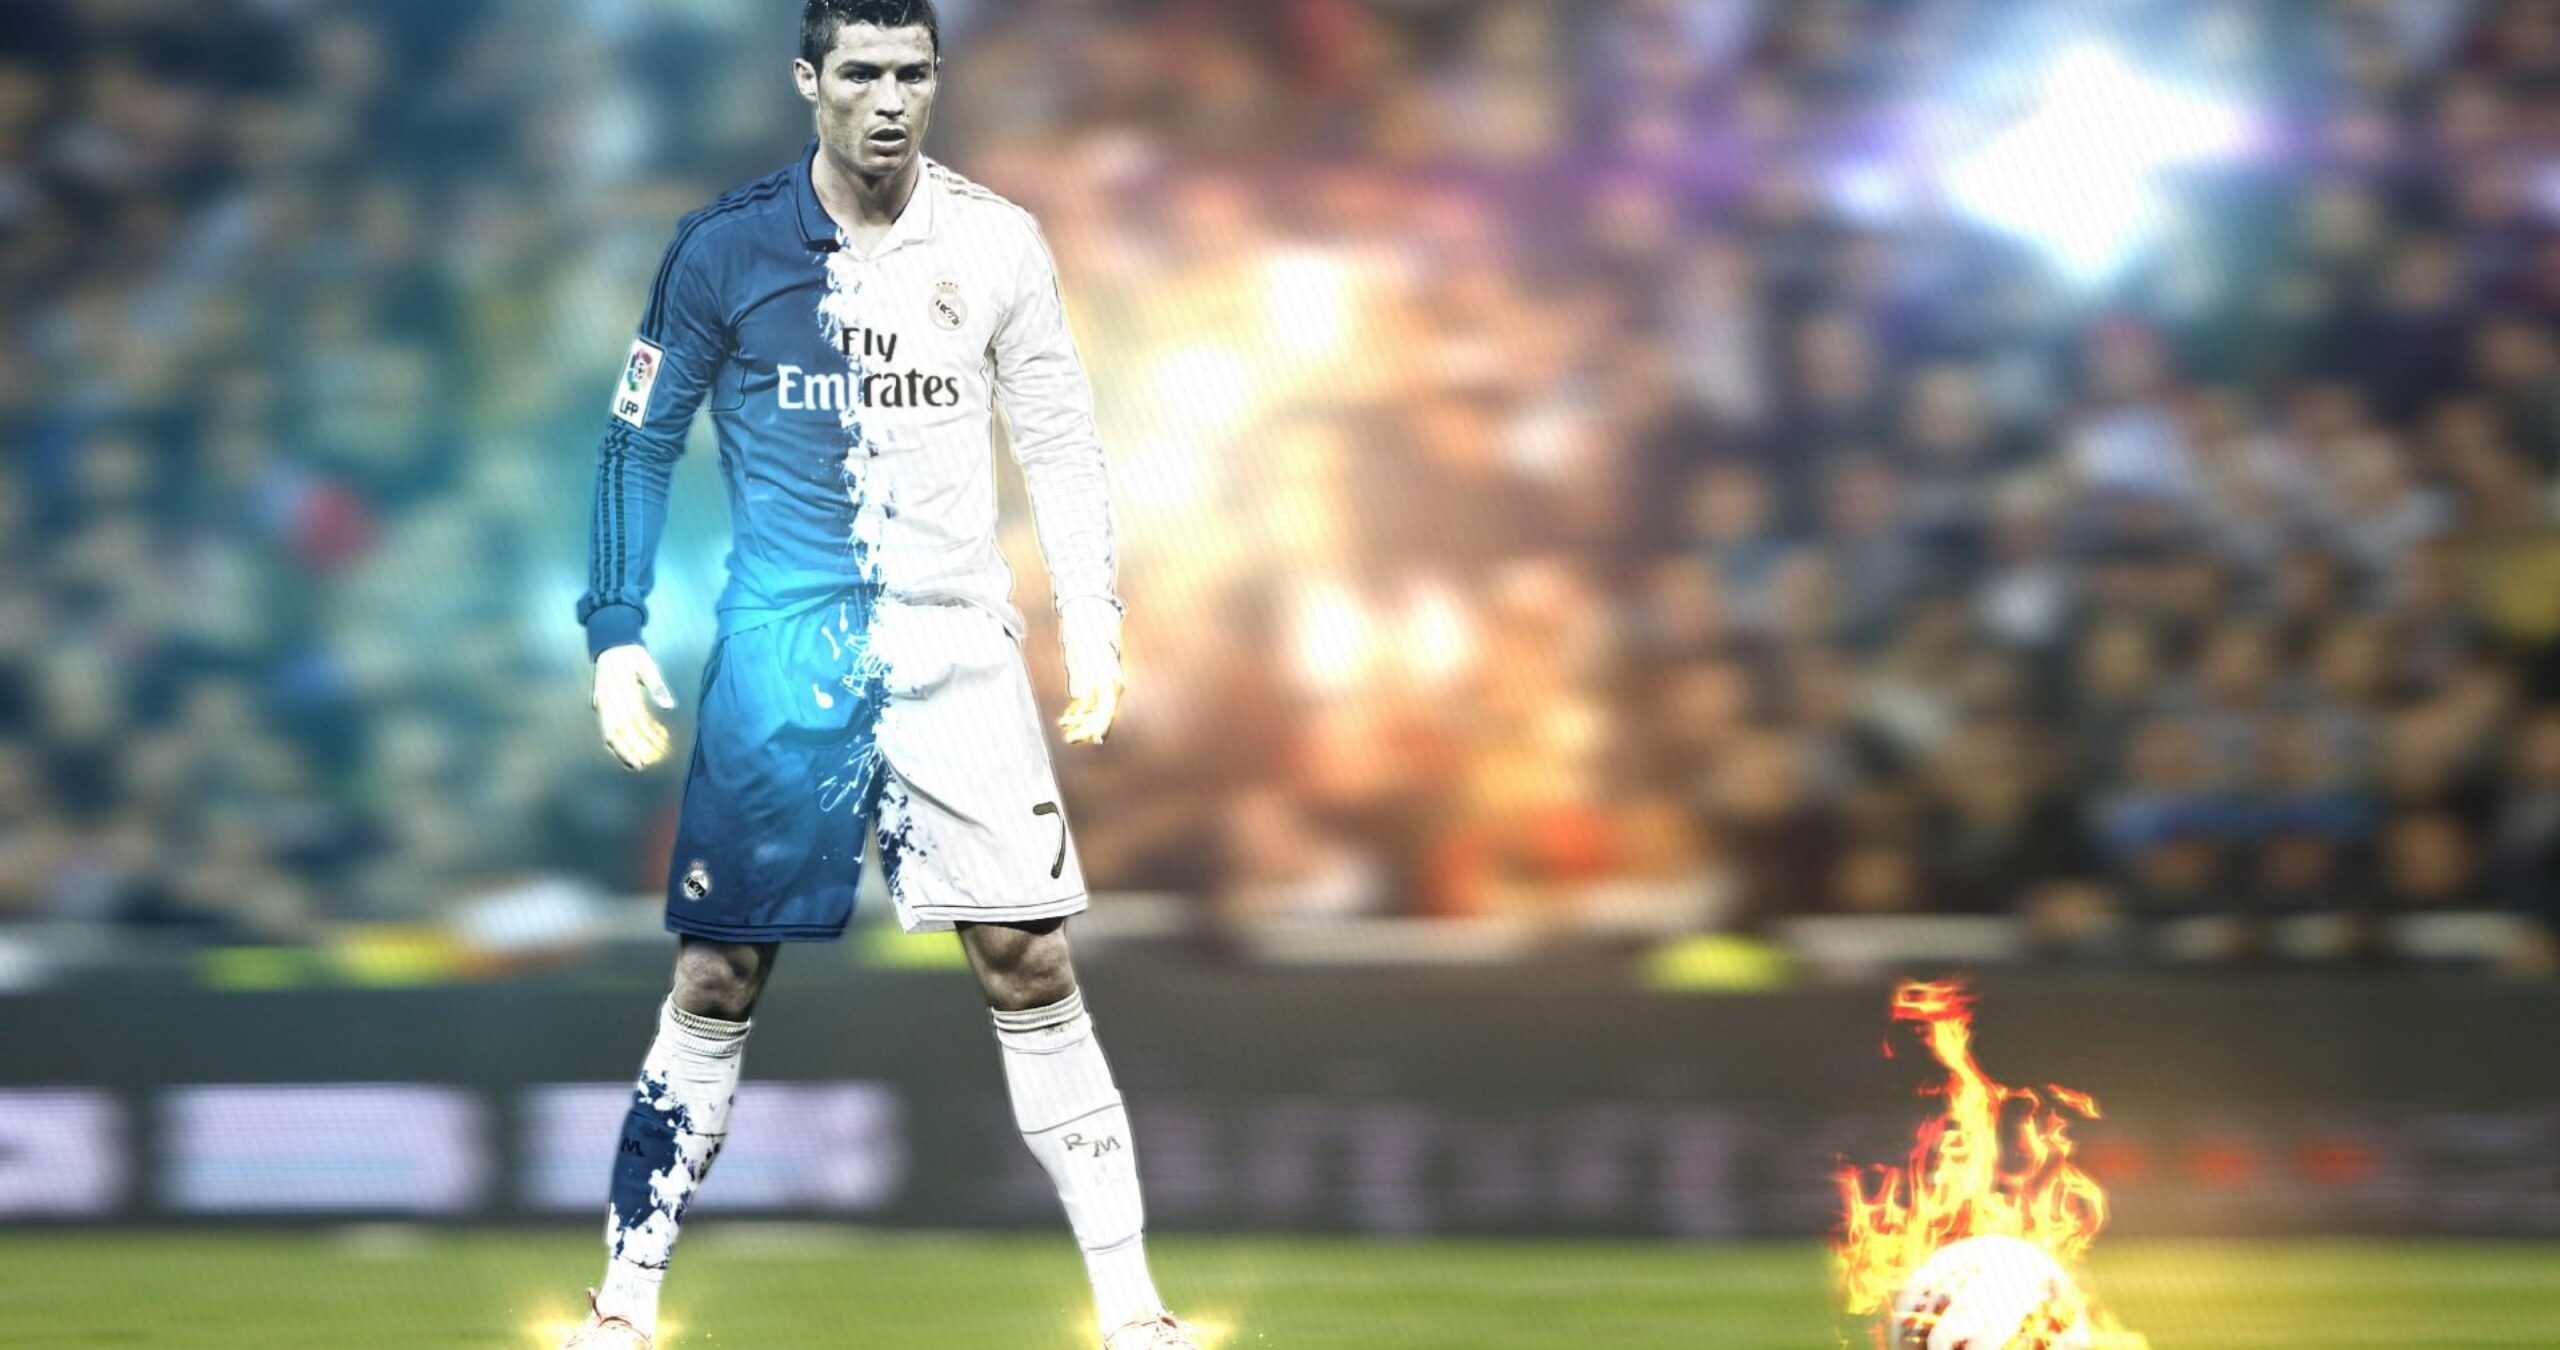 خلفيات 4k صور للكمبيوتر والجوال Wallpapers - خلفيات كريستيانو رونالدو 4k فخمة Cristiano Ronaldo ولا أروع صور عالية الجودة